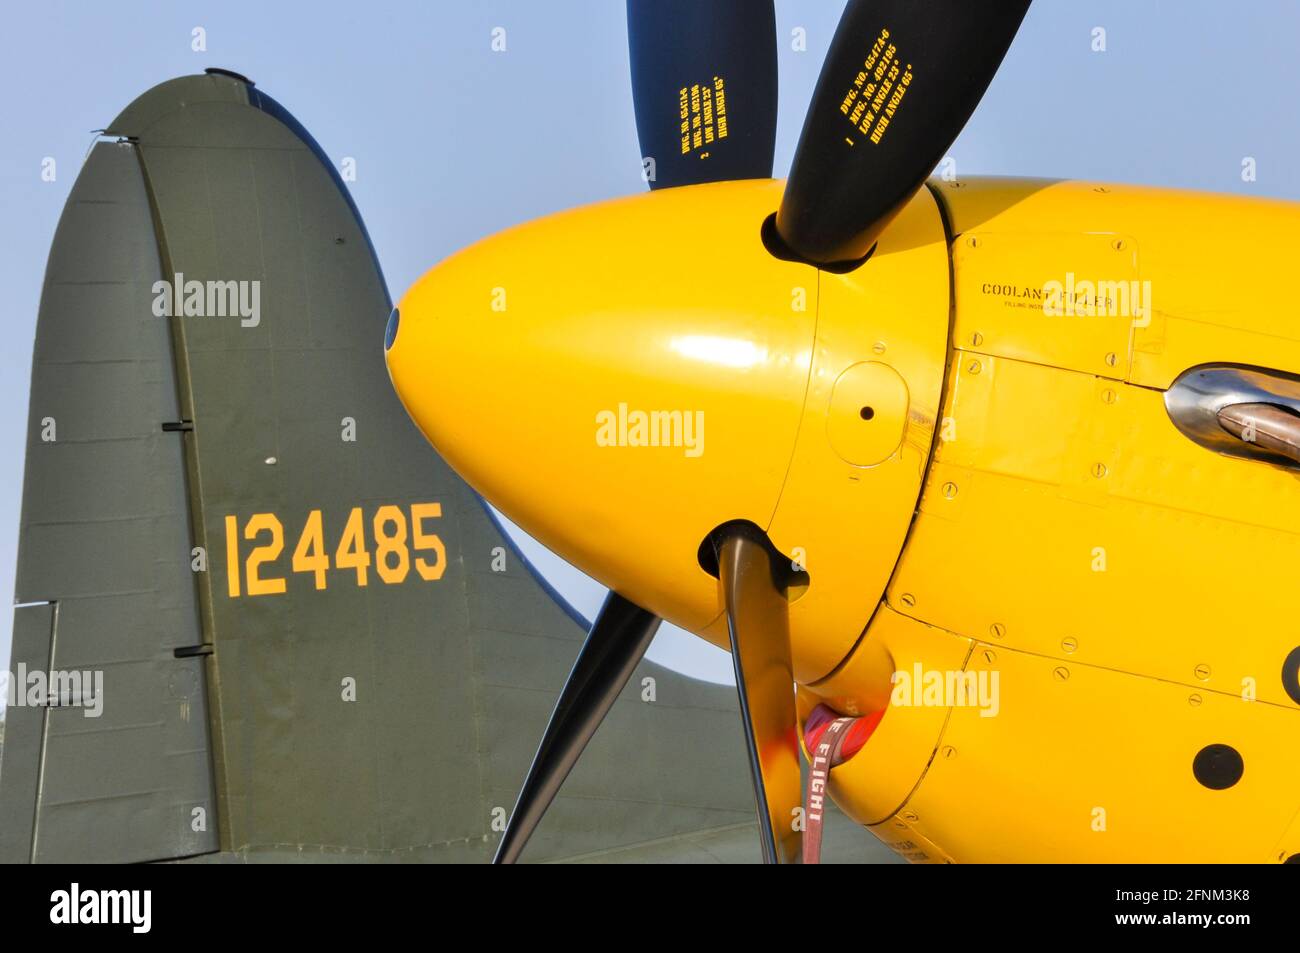 Nez jaune d'un avion de chasse P-51D Mustang nord-américain avec détail hélice et queue de Boeing B-17 Flying Fortress. Avions de la Seconde Guerre mondiale Banque D'Images